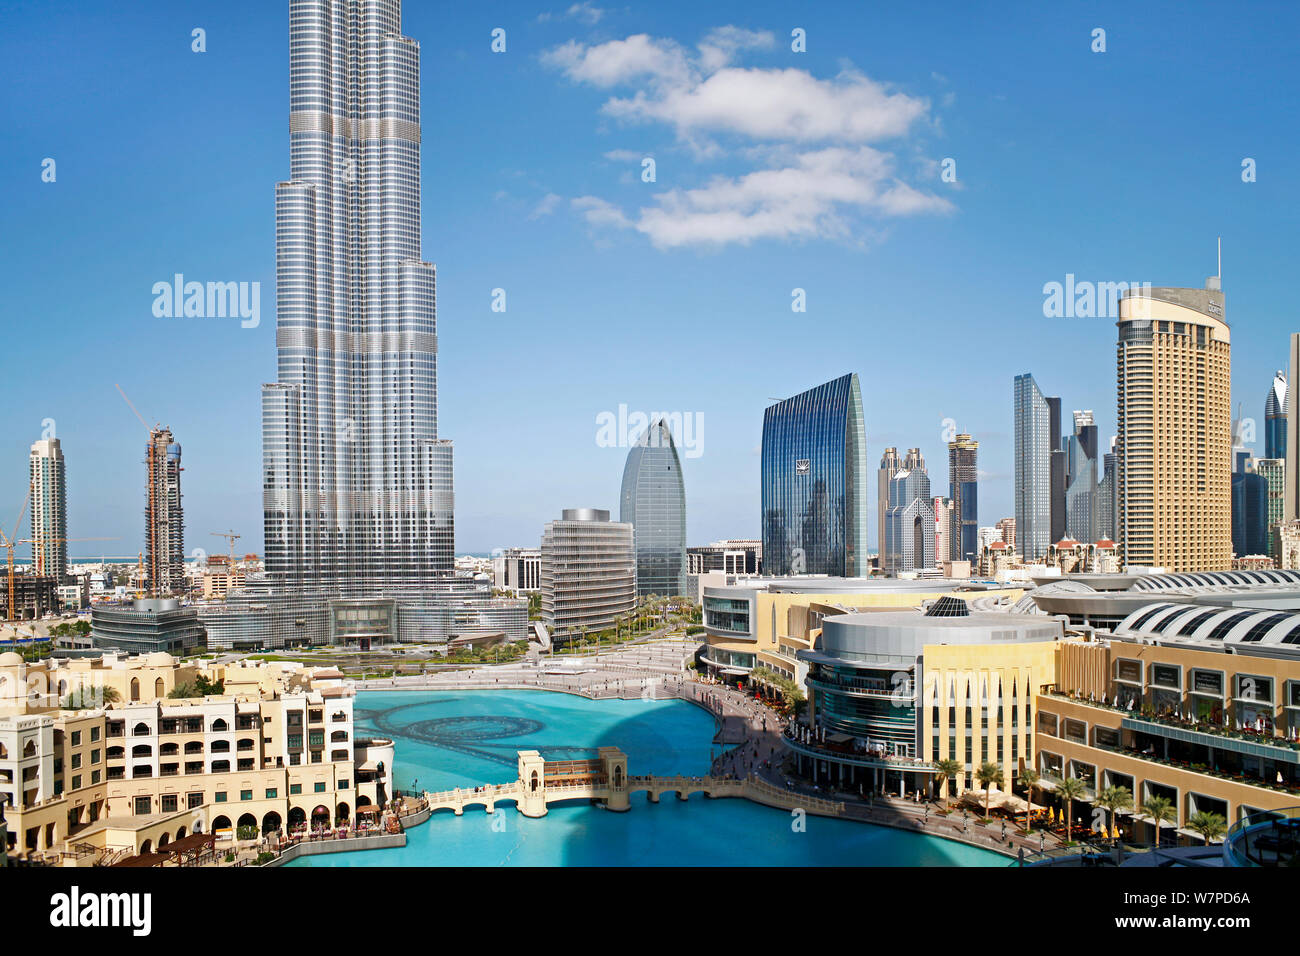 Il Burj Khalifa con sviluppo di lusso al di sotto, completata nel 2010, l'uomo più alto struttura realizzata nel mondo, Dubai, Emirati Arabi Uniti 2011 Foto Stock